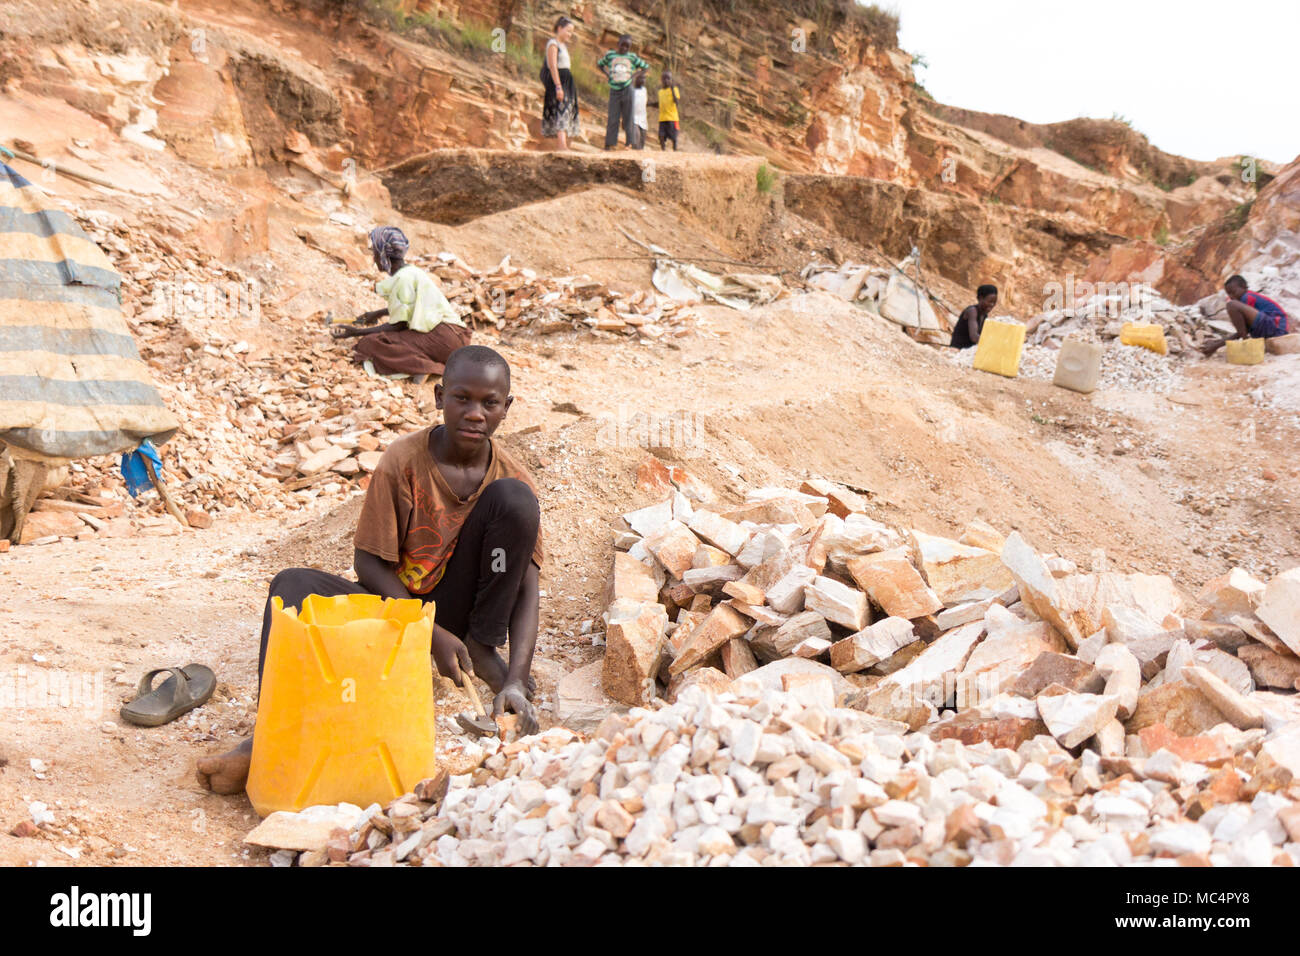 Lugazi, en Ouganda. 18 juin 2017. Un garçon ougandais casser des pierres dans les petites dalles à son contremaître. Fondamentalement, le travail des enfants. Banque D'Images